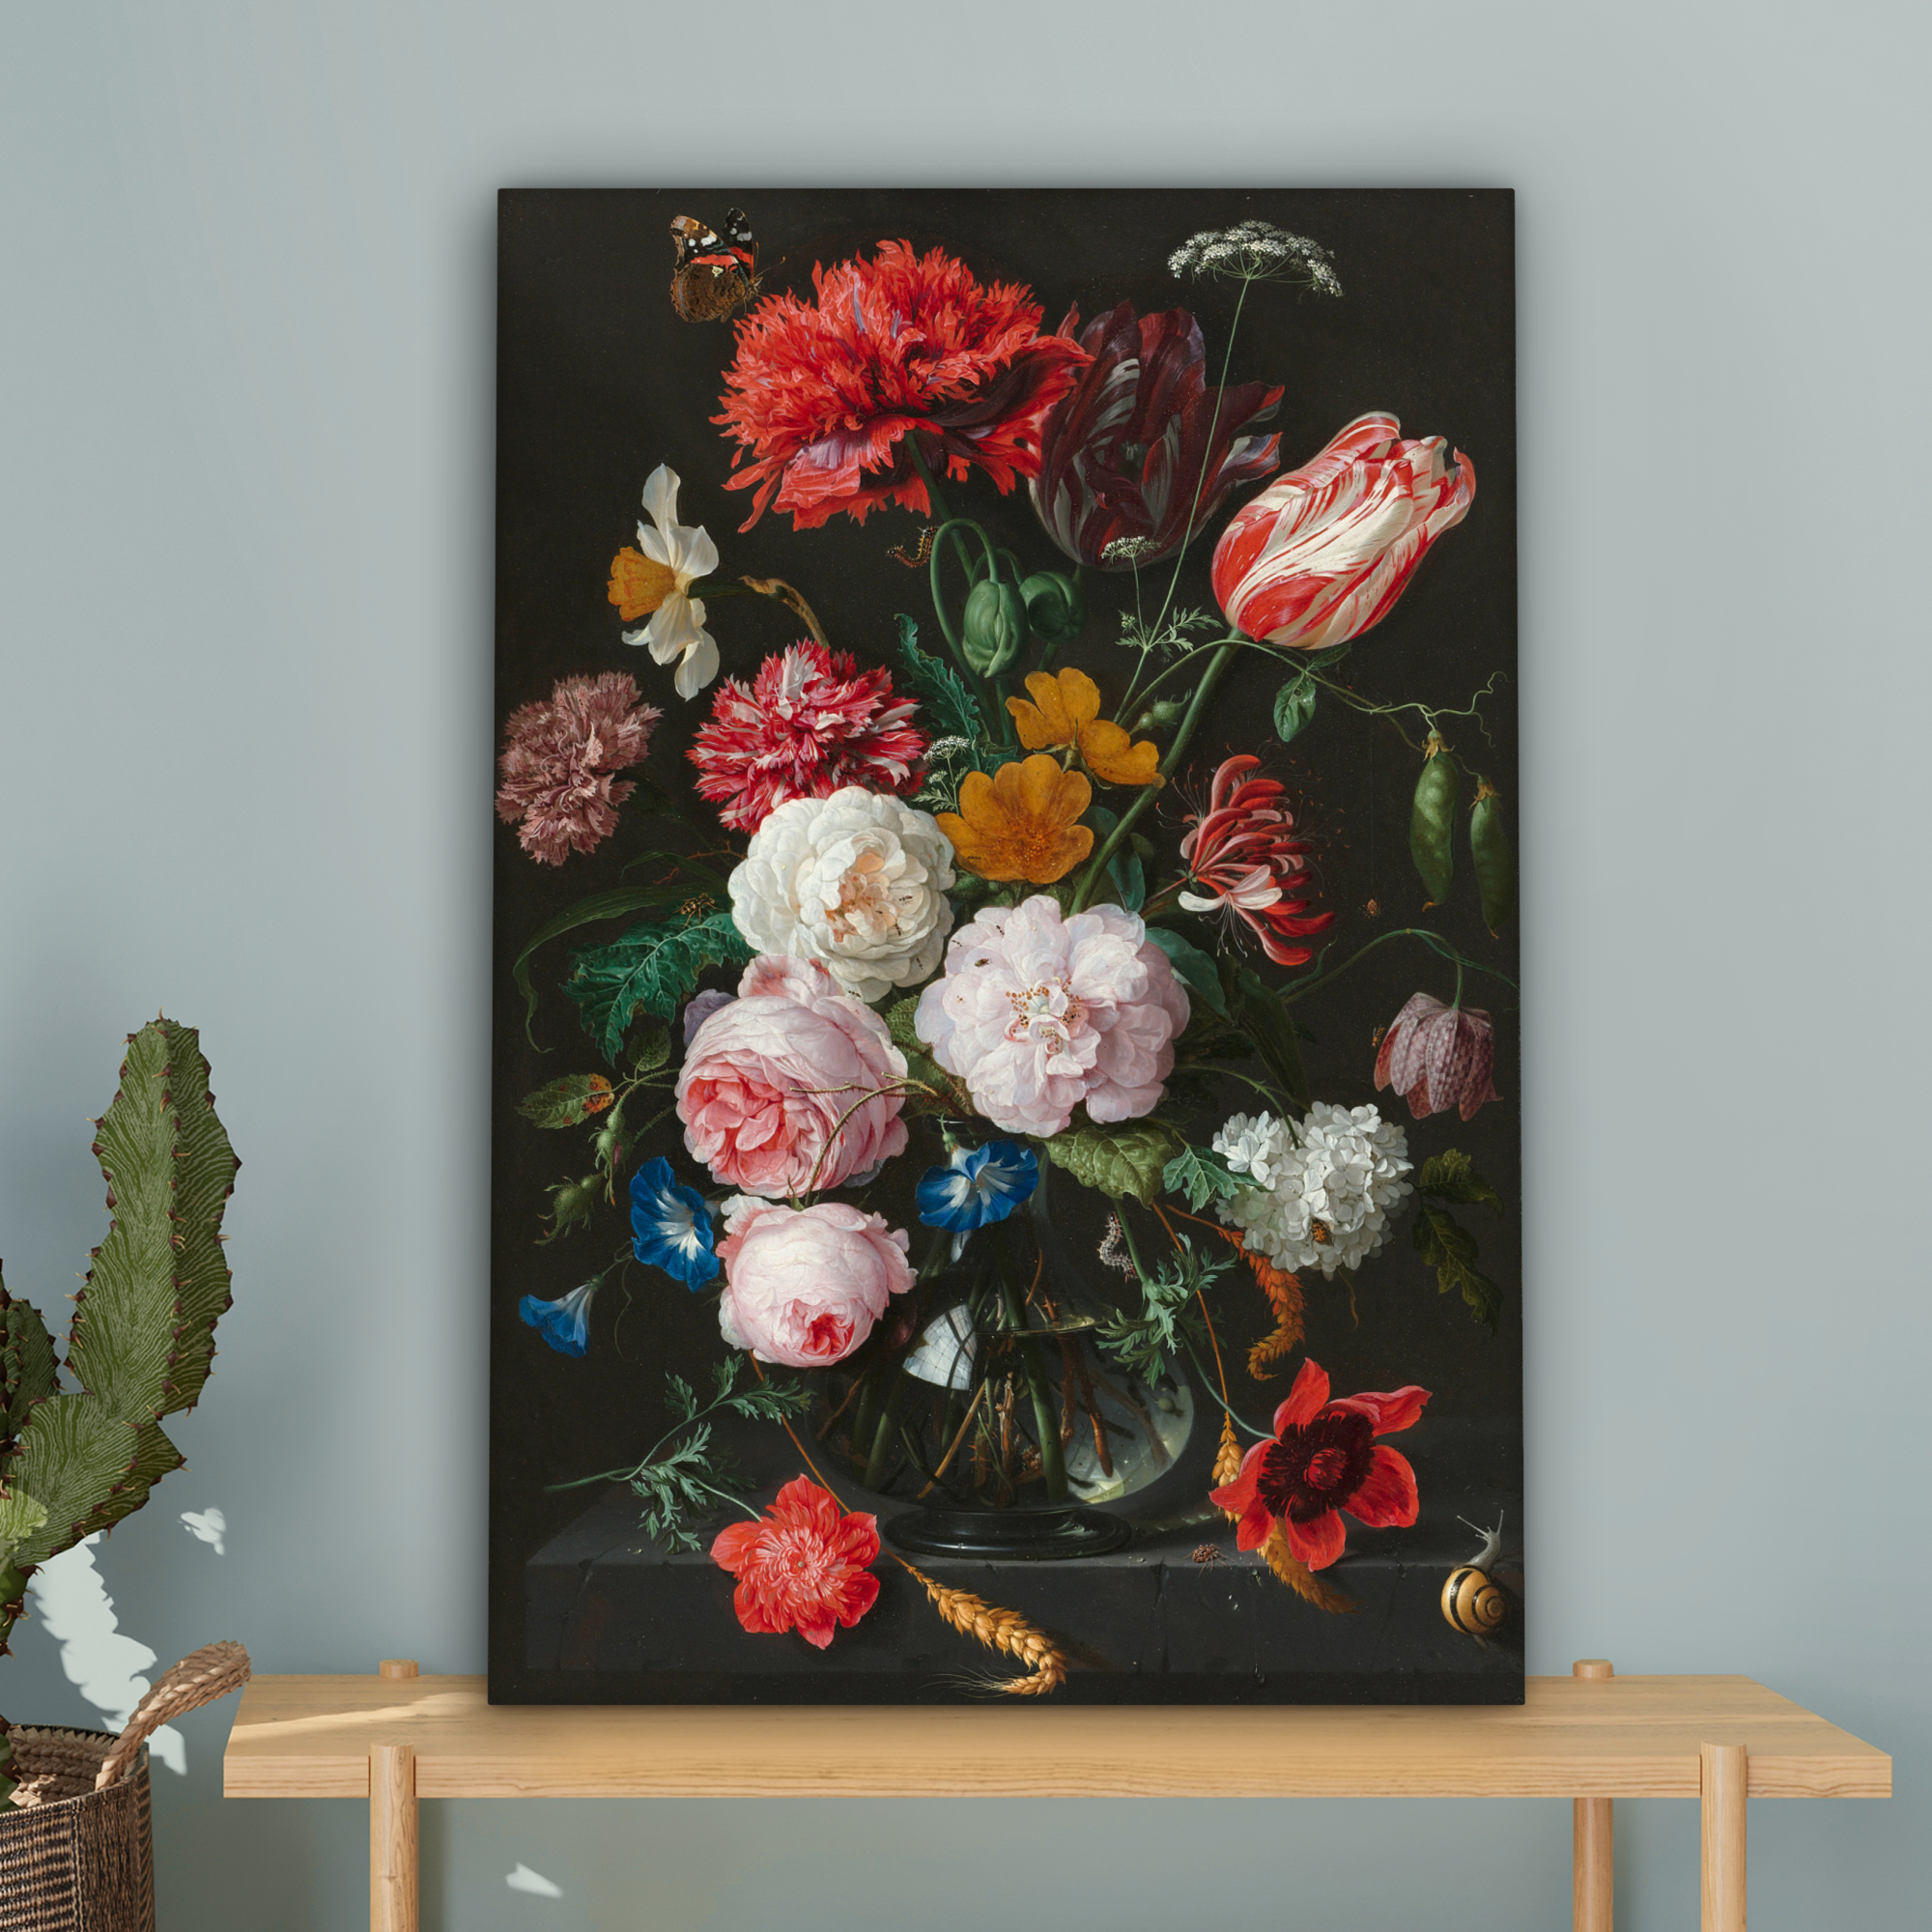 Tableau sur toile - Nature morte avec des fleurs dans un vase en verre - Peinture de Jan Davidsz. de Heem-4